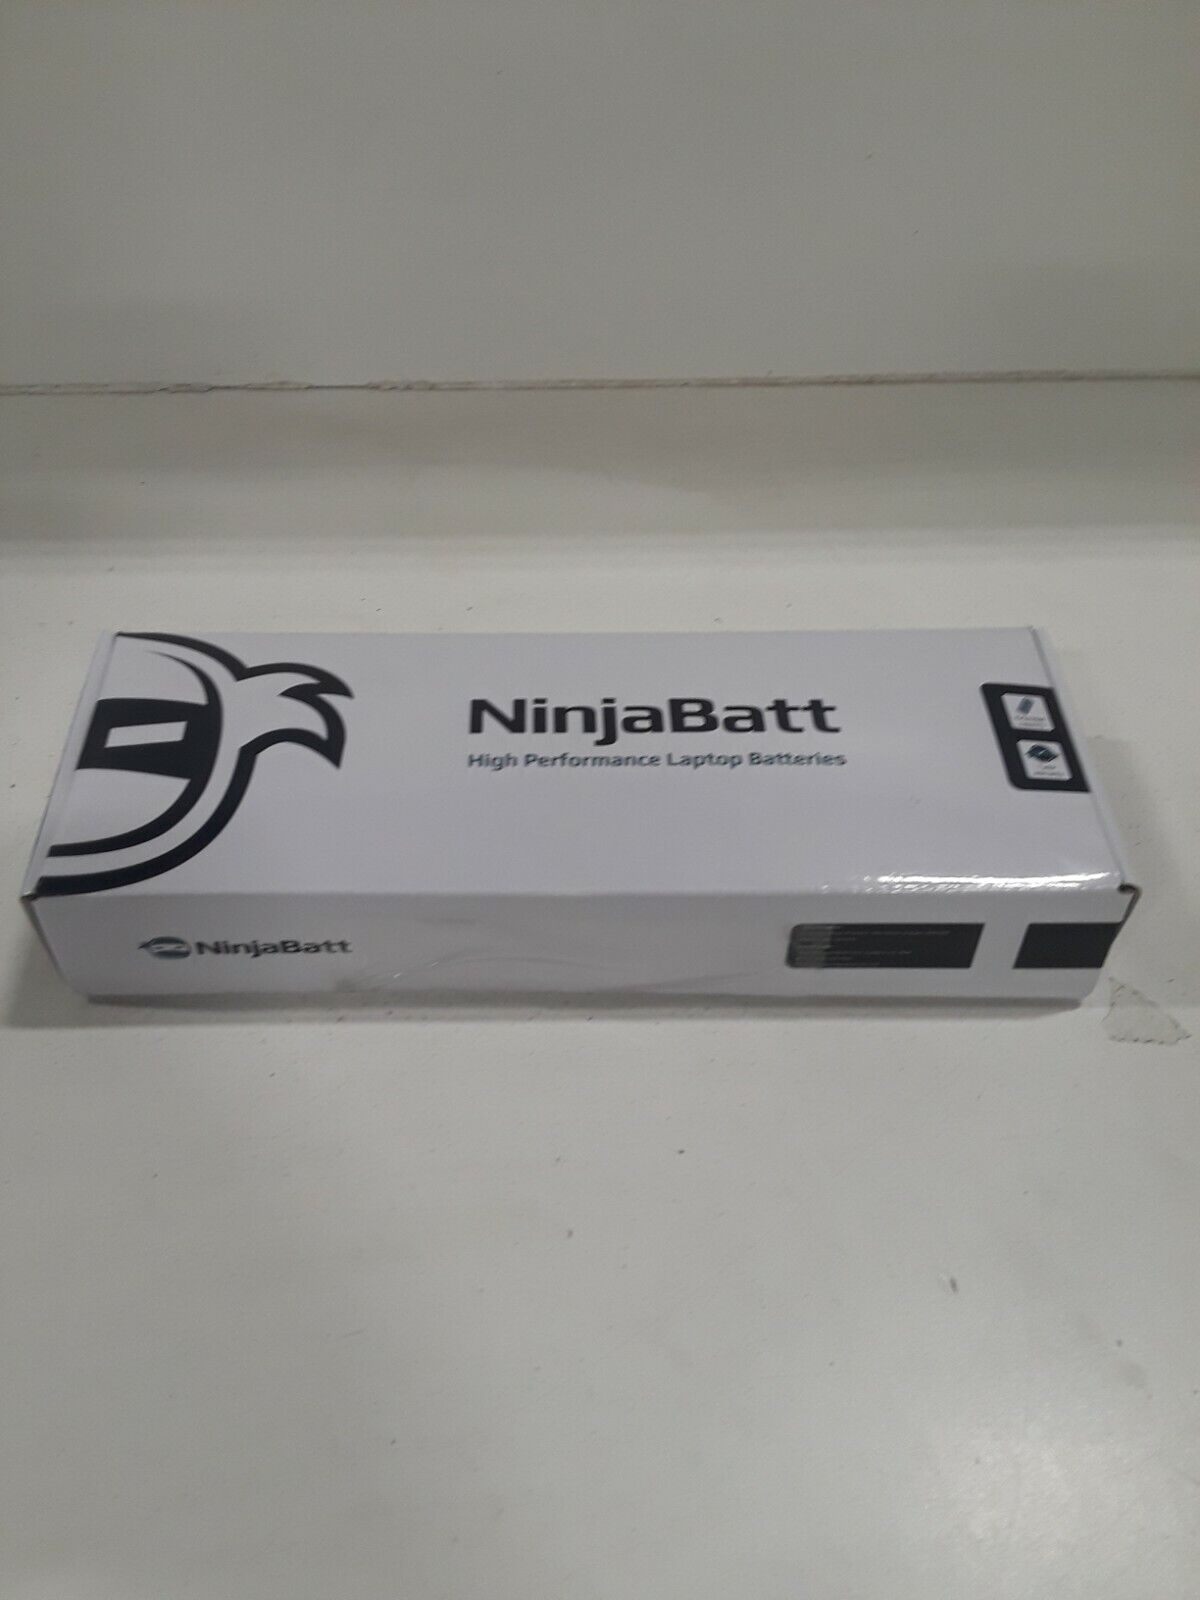 NinjaBatt 8800 mAh 12 Cells Laptop Battery